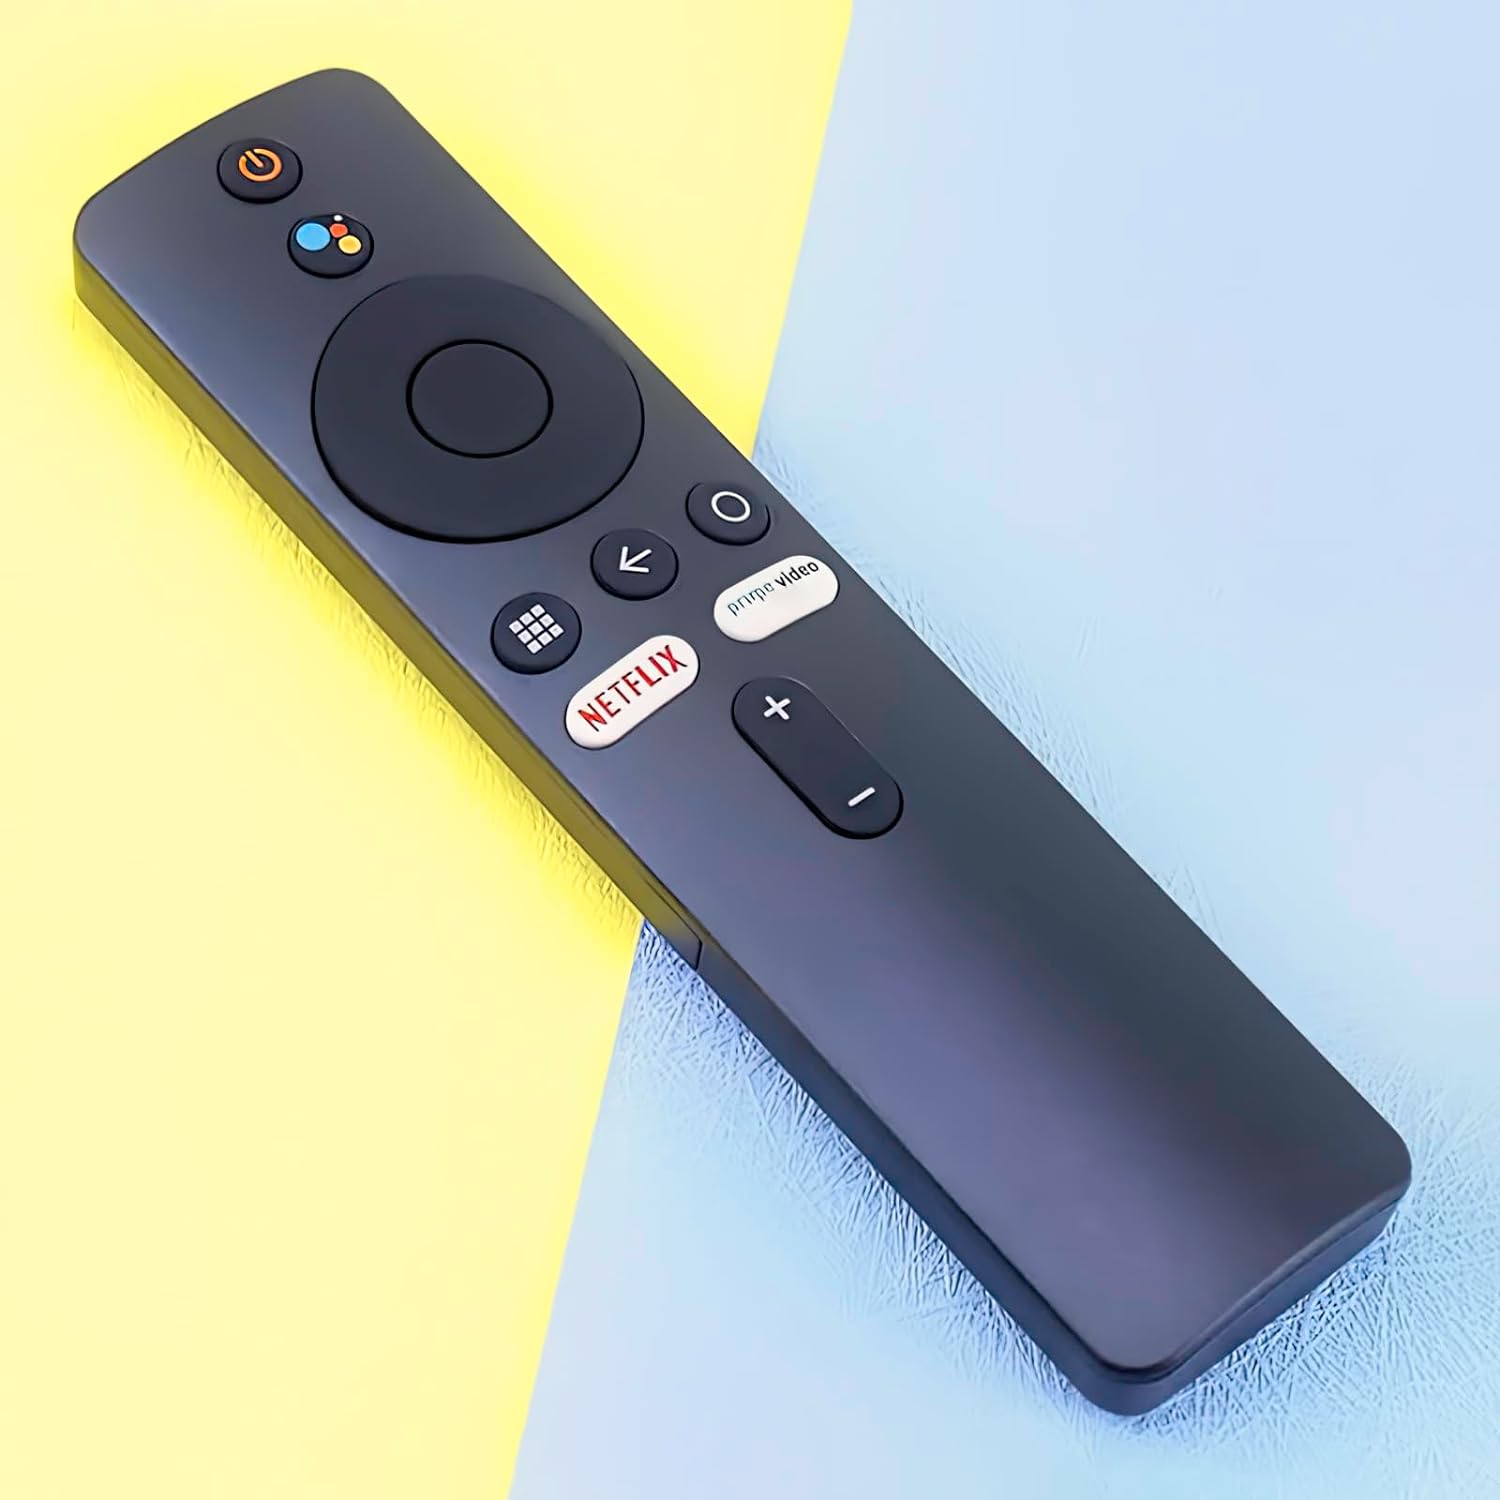 Remote Control for Xiaomi Mi TV Stick/MI Box 4S 4K, Replacement Remote Control for Xiaomi Mi TV Stick with Bluetooth and Voice Control